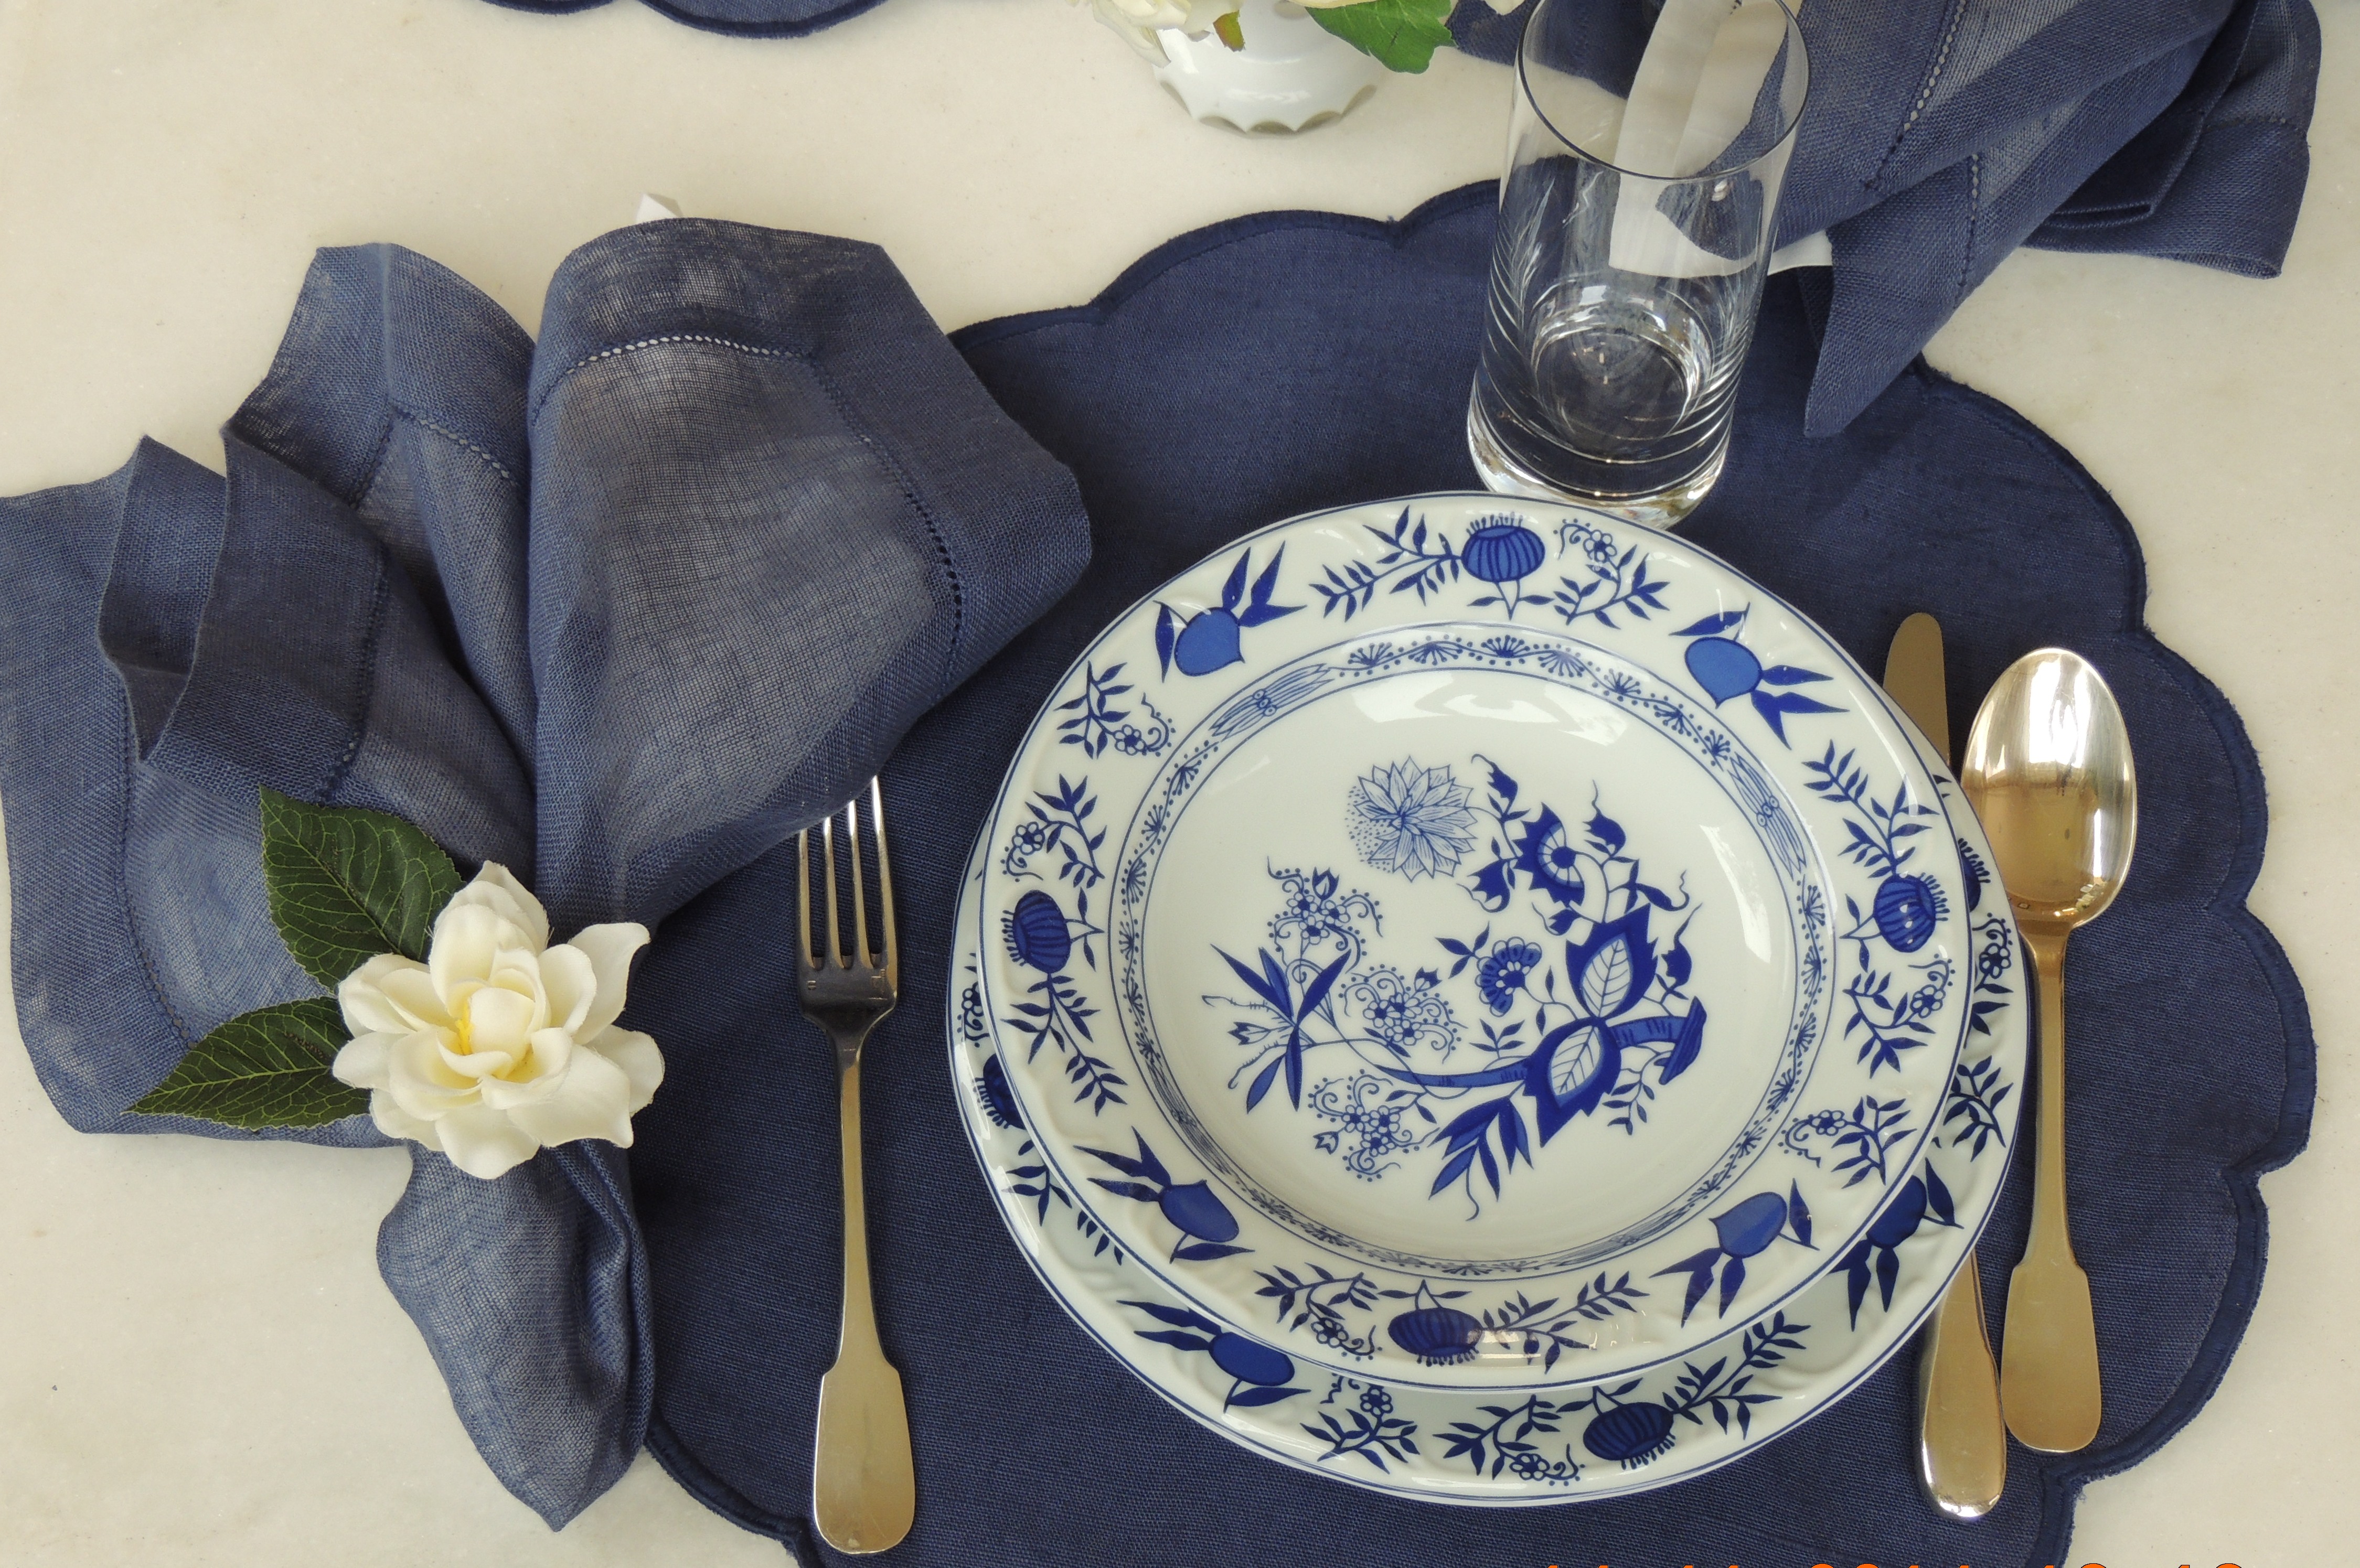 Porcelanas Schmidt - Modelo Cebolinha, fundo branco com detalhes em azul, sobre a mesa com jogo americano azul, com talheres em prata, garfo a esquerda do prato.